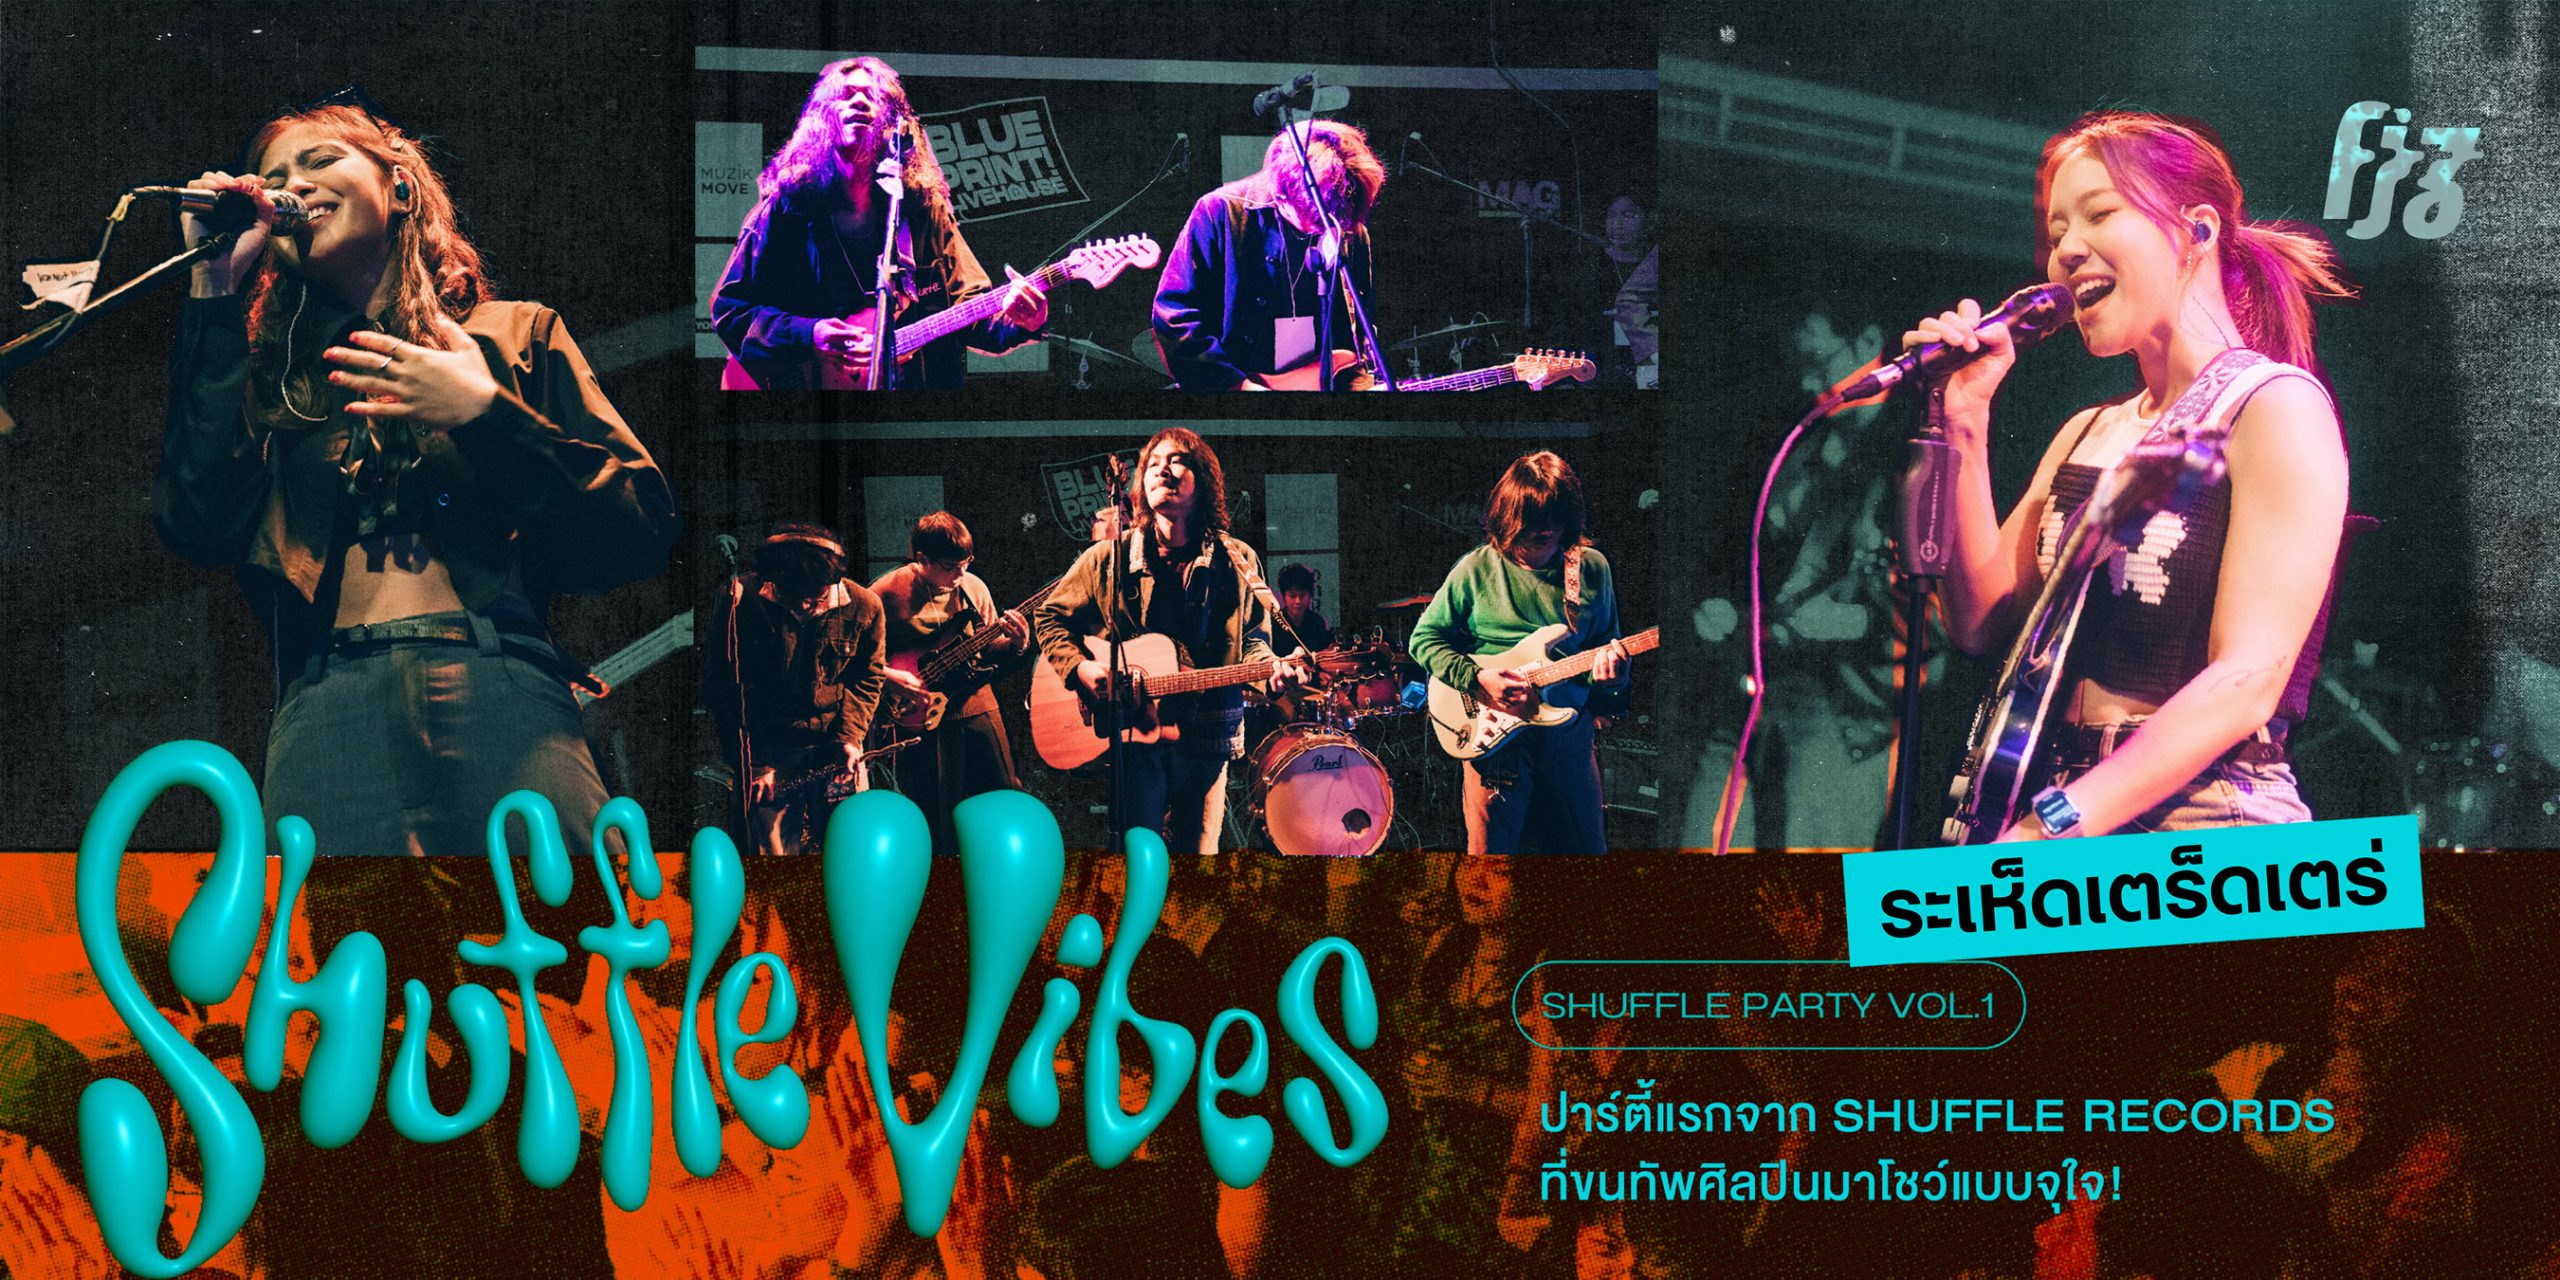 ระเห็ดเตร็ดเตร่: Shuffle Party Vol.1 “Shuffle Vibes” ปาร์ตี้แรกจาก Shuffle Records ที่ขนทัพศิลปินมาโชว์แบบจุใจ!